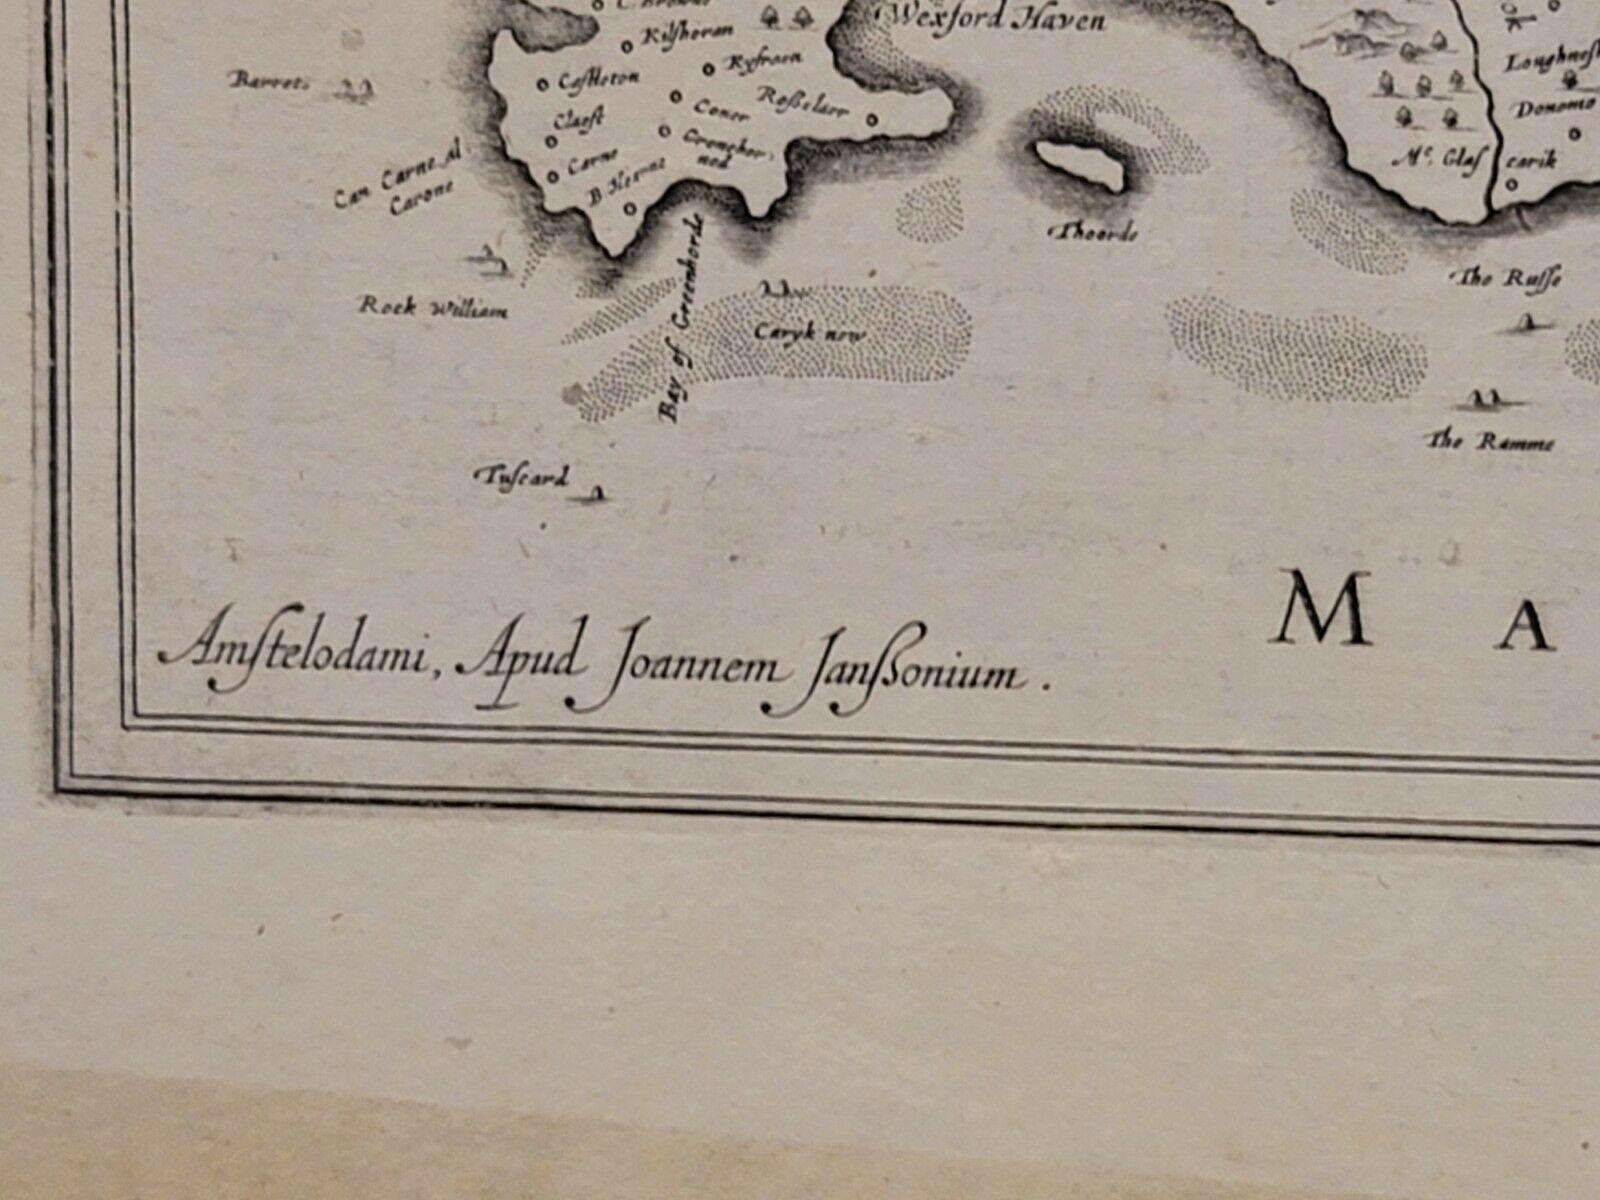 1636 Jansson Map of Ireland Entitled 